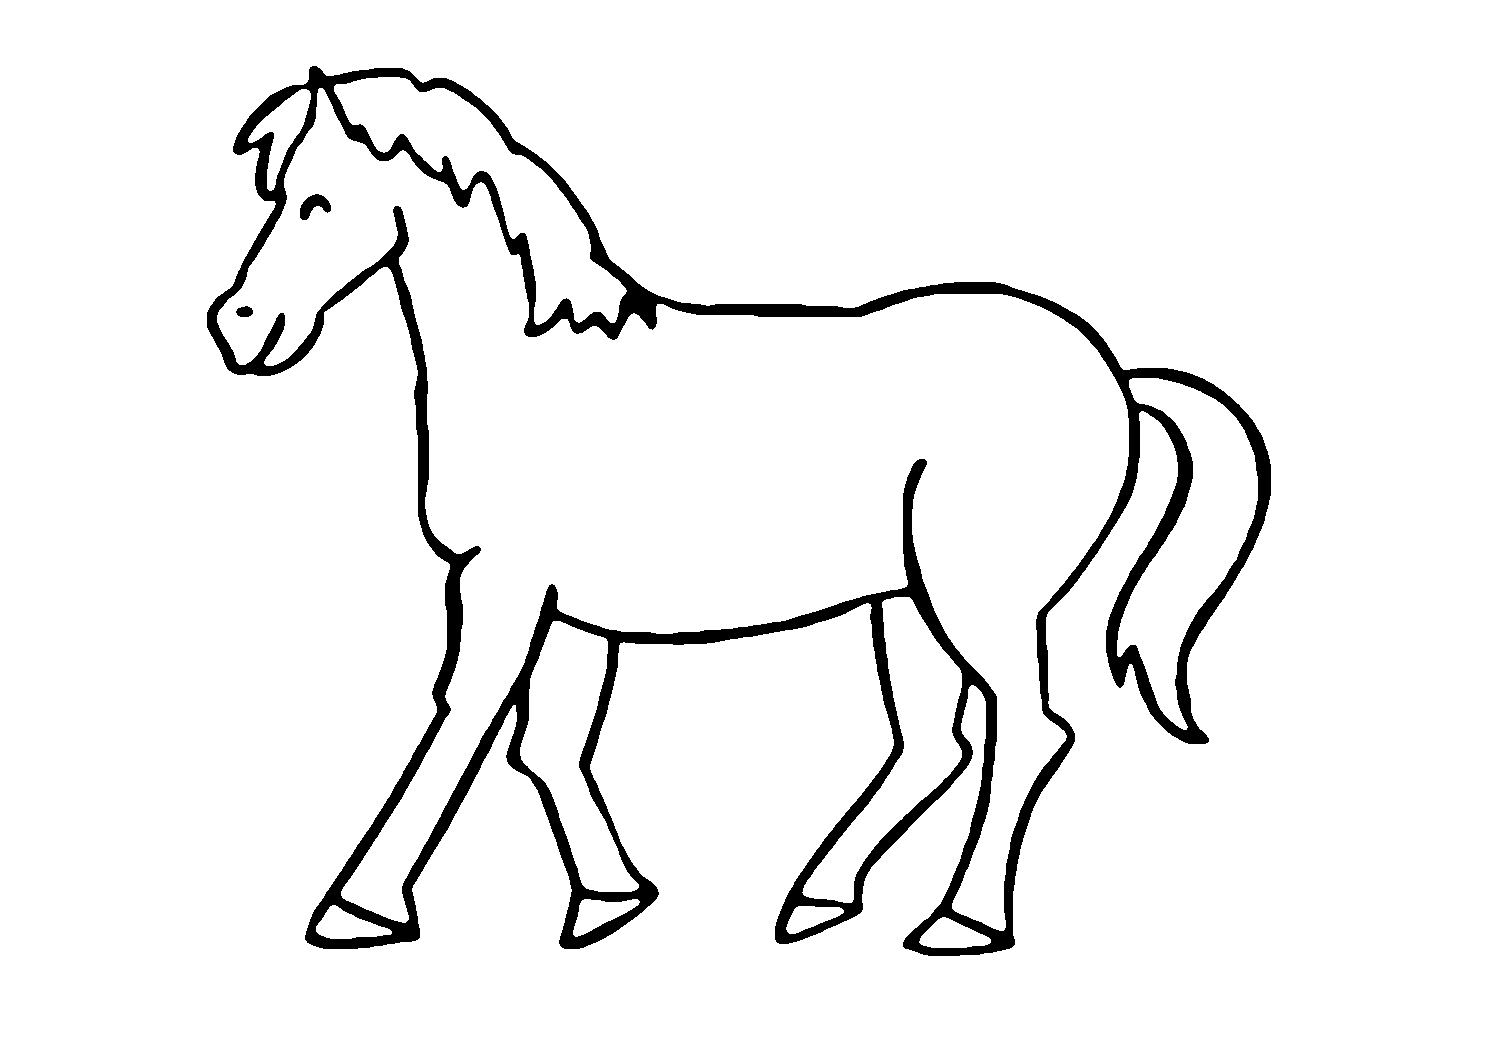 Раскраска. Лошади. Лошадка раскраска для детей. Силуэт лошади для раскрашивания. Трафарет лошадки для детей.